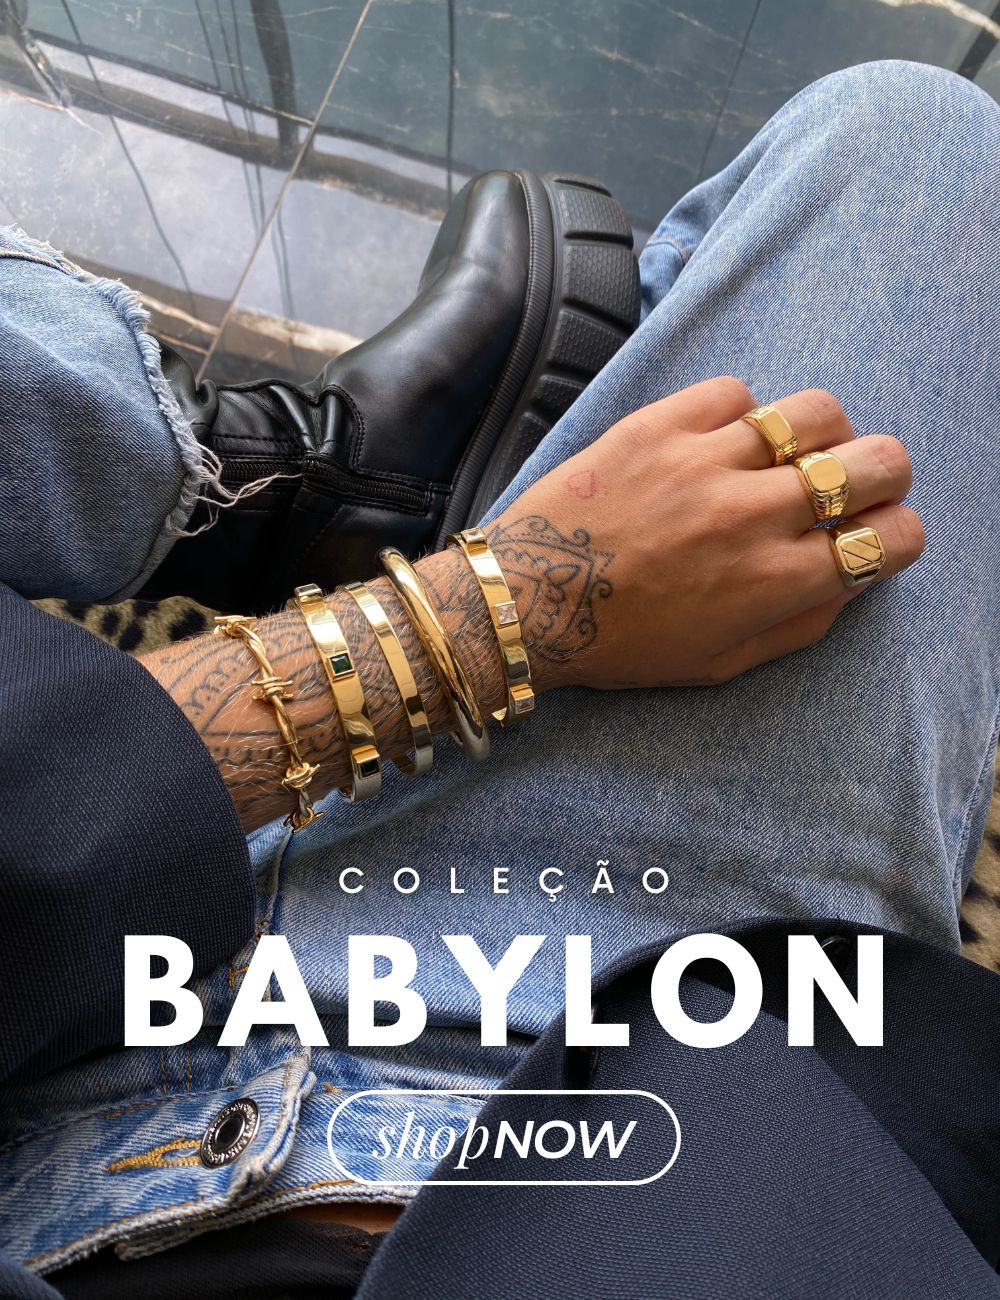 Coleção Babylon [mobile]